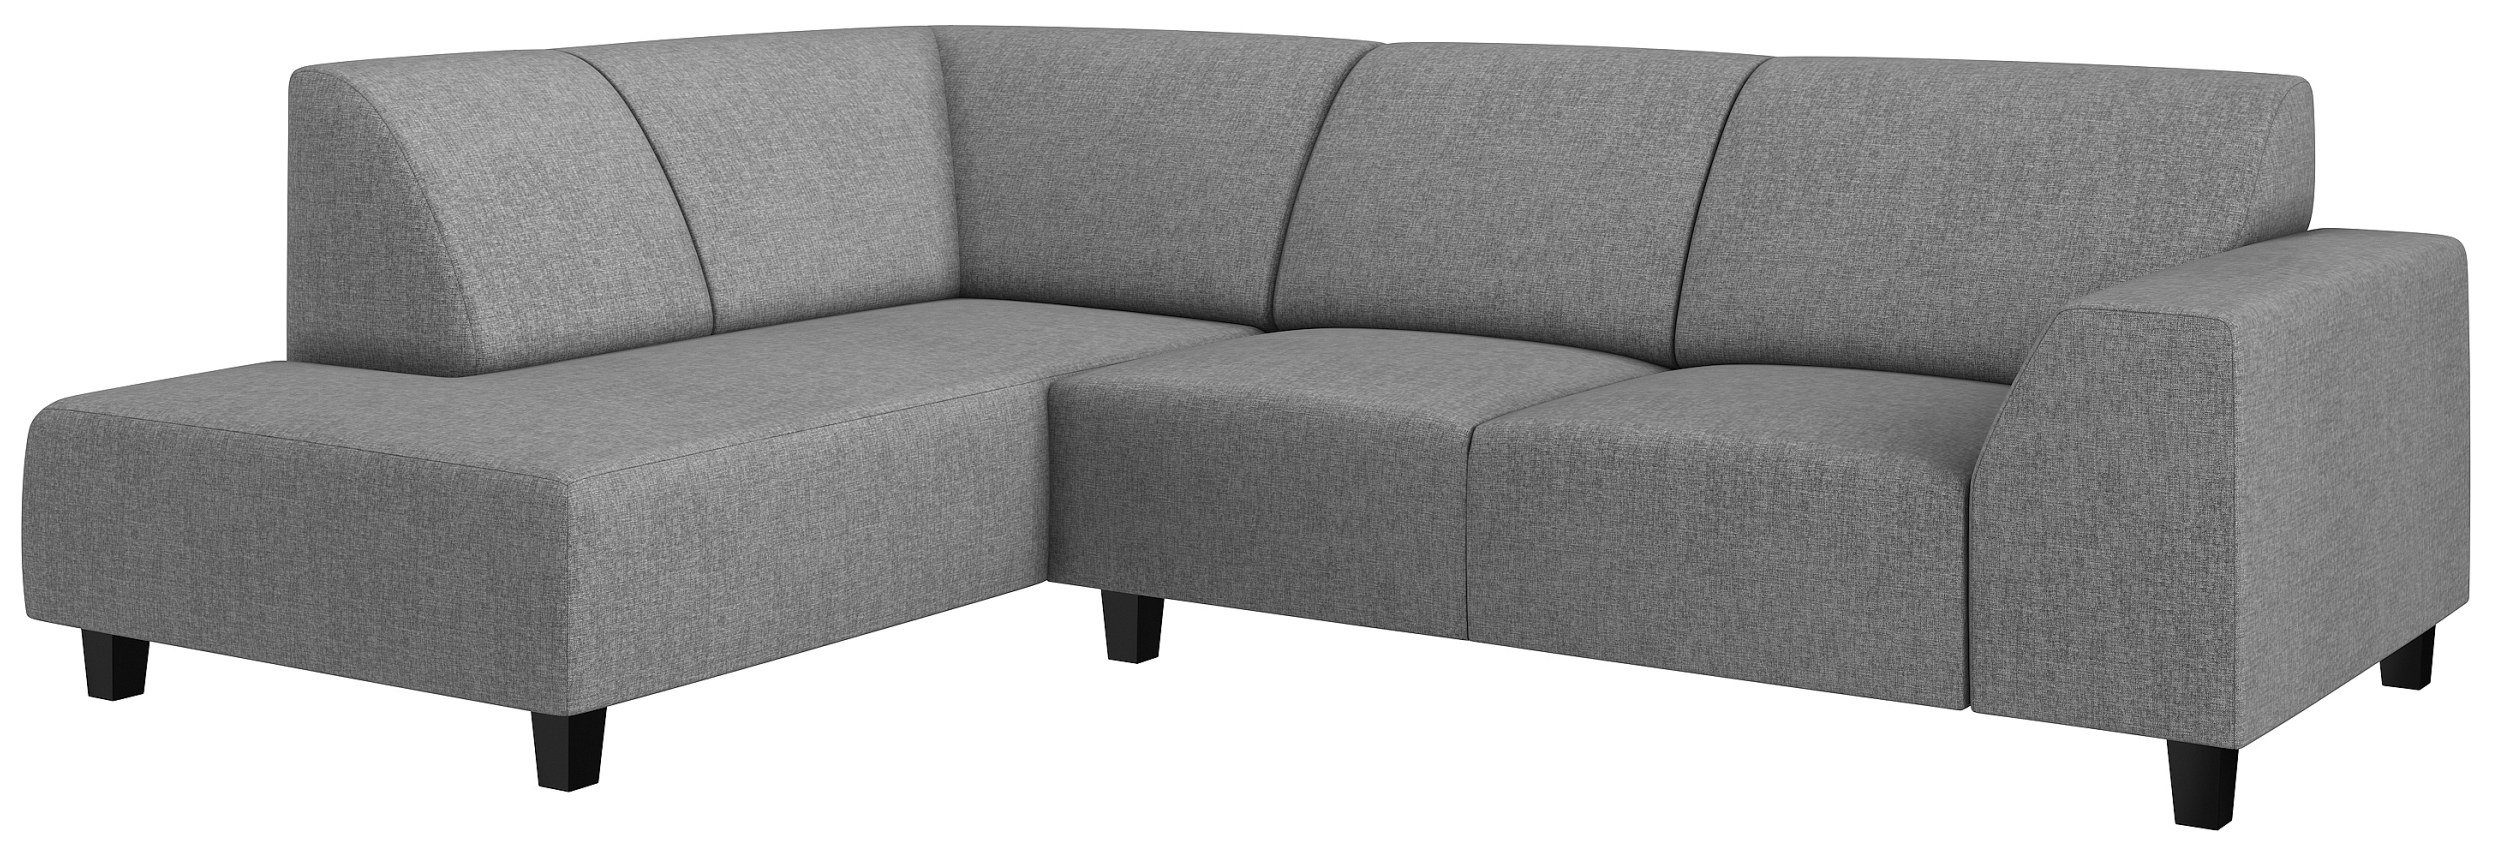 Sitzkomfort, im Stylefy L-Form, frei Design, bestellbar, links Ecksofa mit stellbar, mane Raum rechts oder Einar, Modern Eckcouch, Rückenlehne